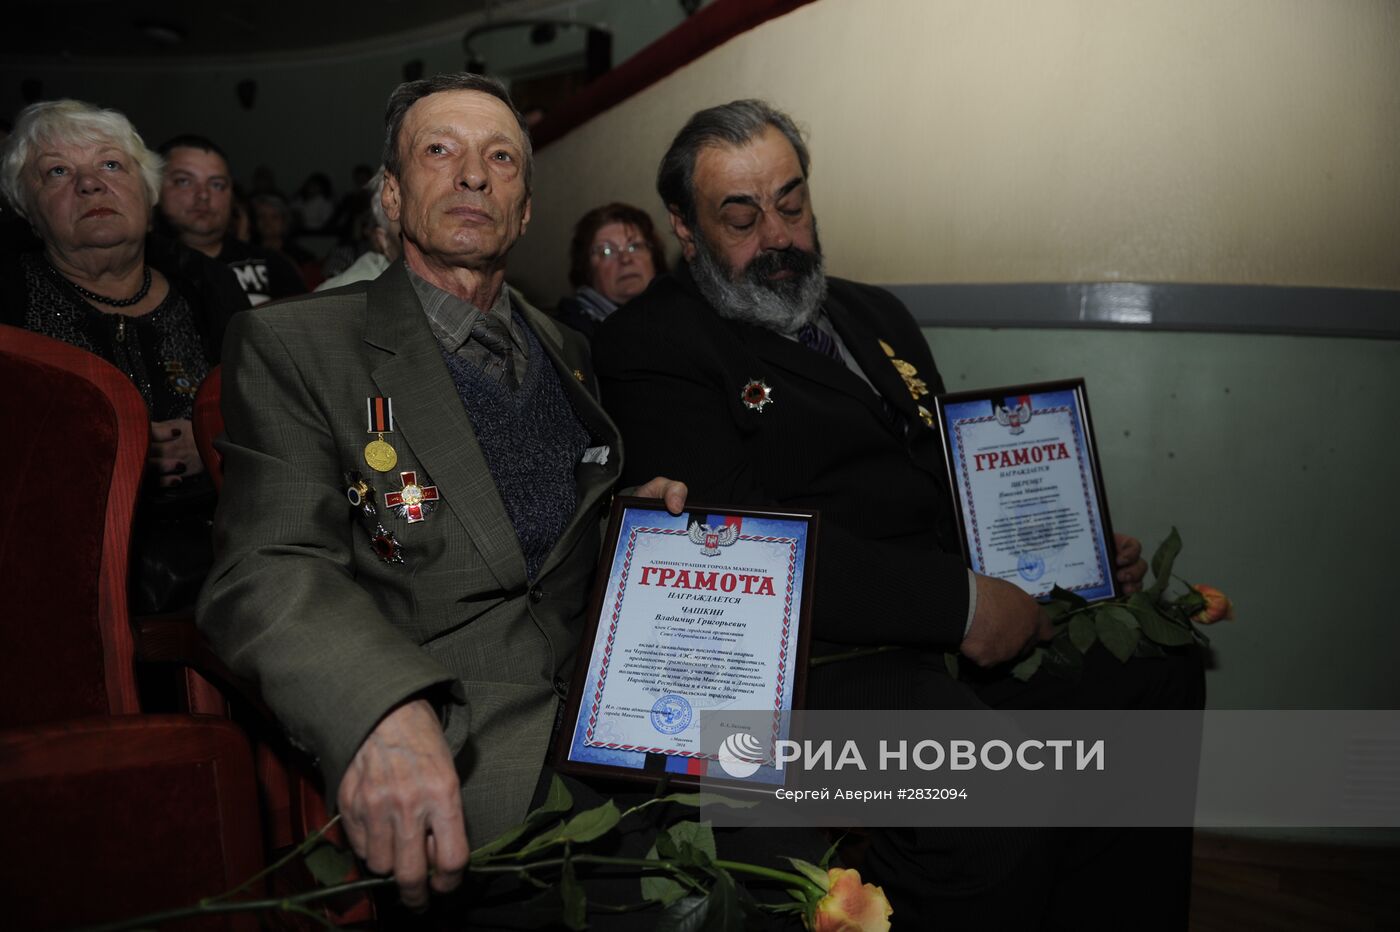 Мероприятия, посвященные 30-летию аварии на ЧАЭС, прошли в Макеевке Донецкой области